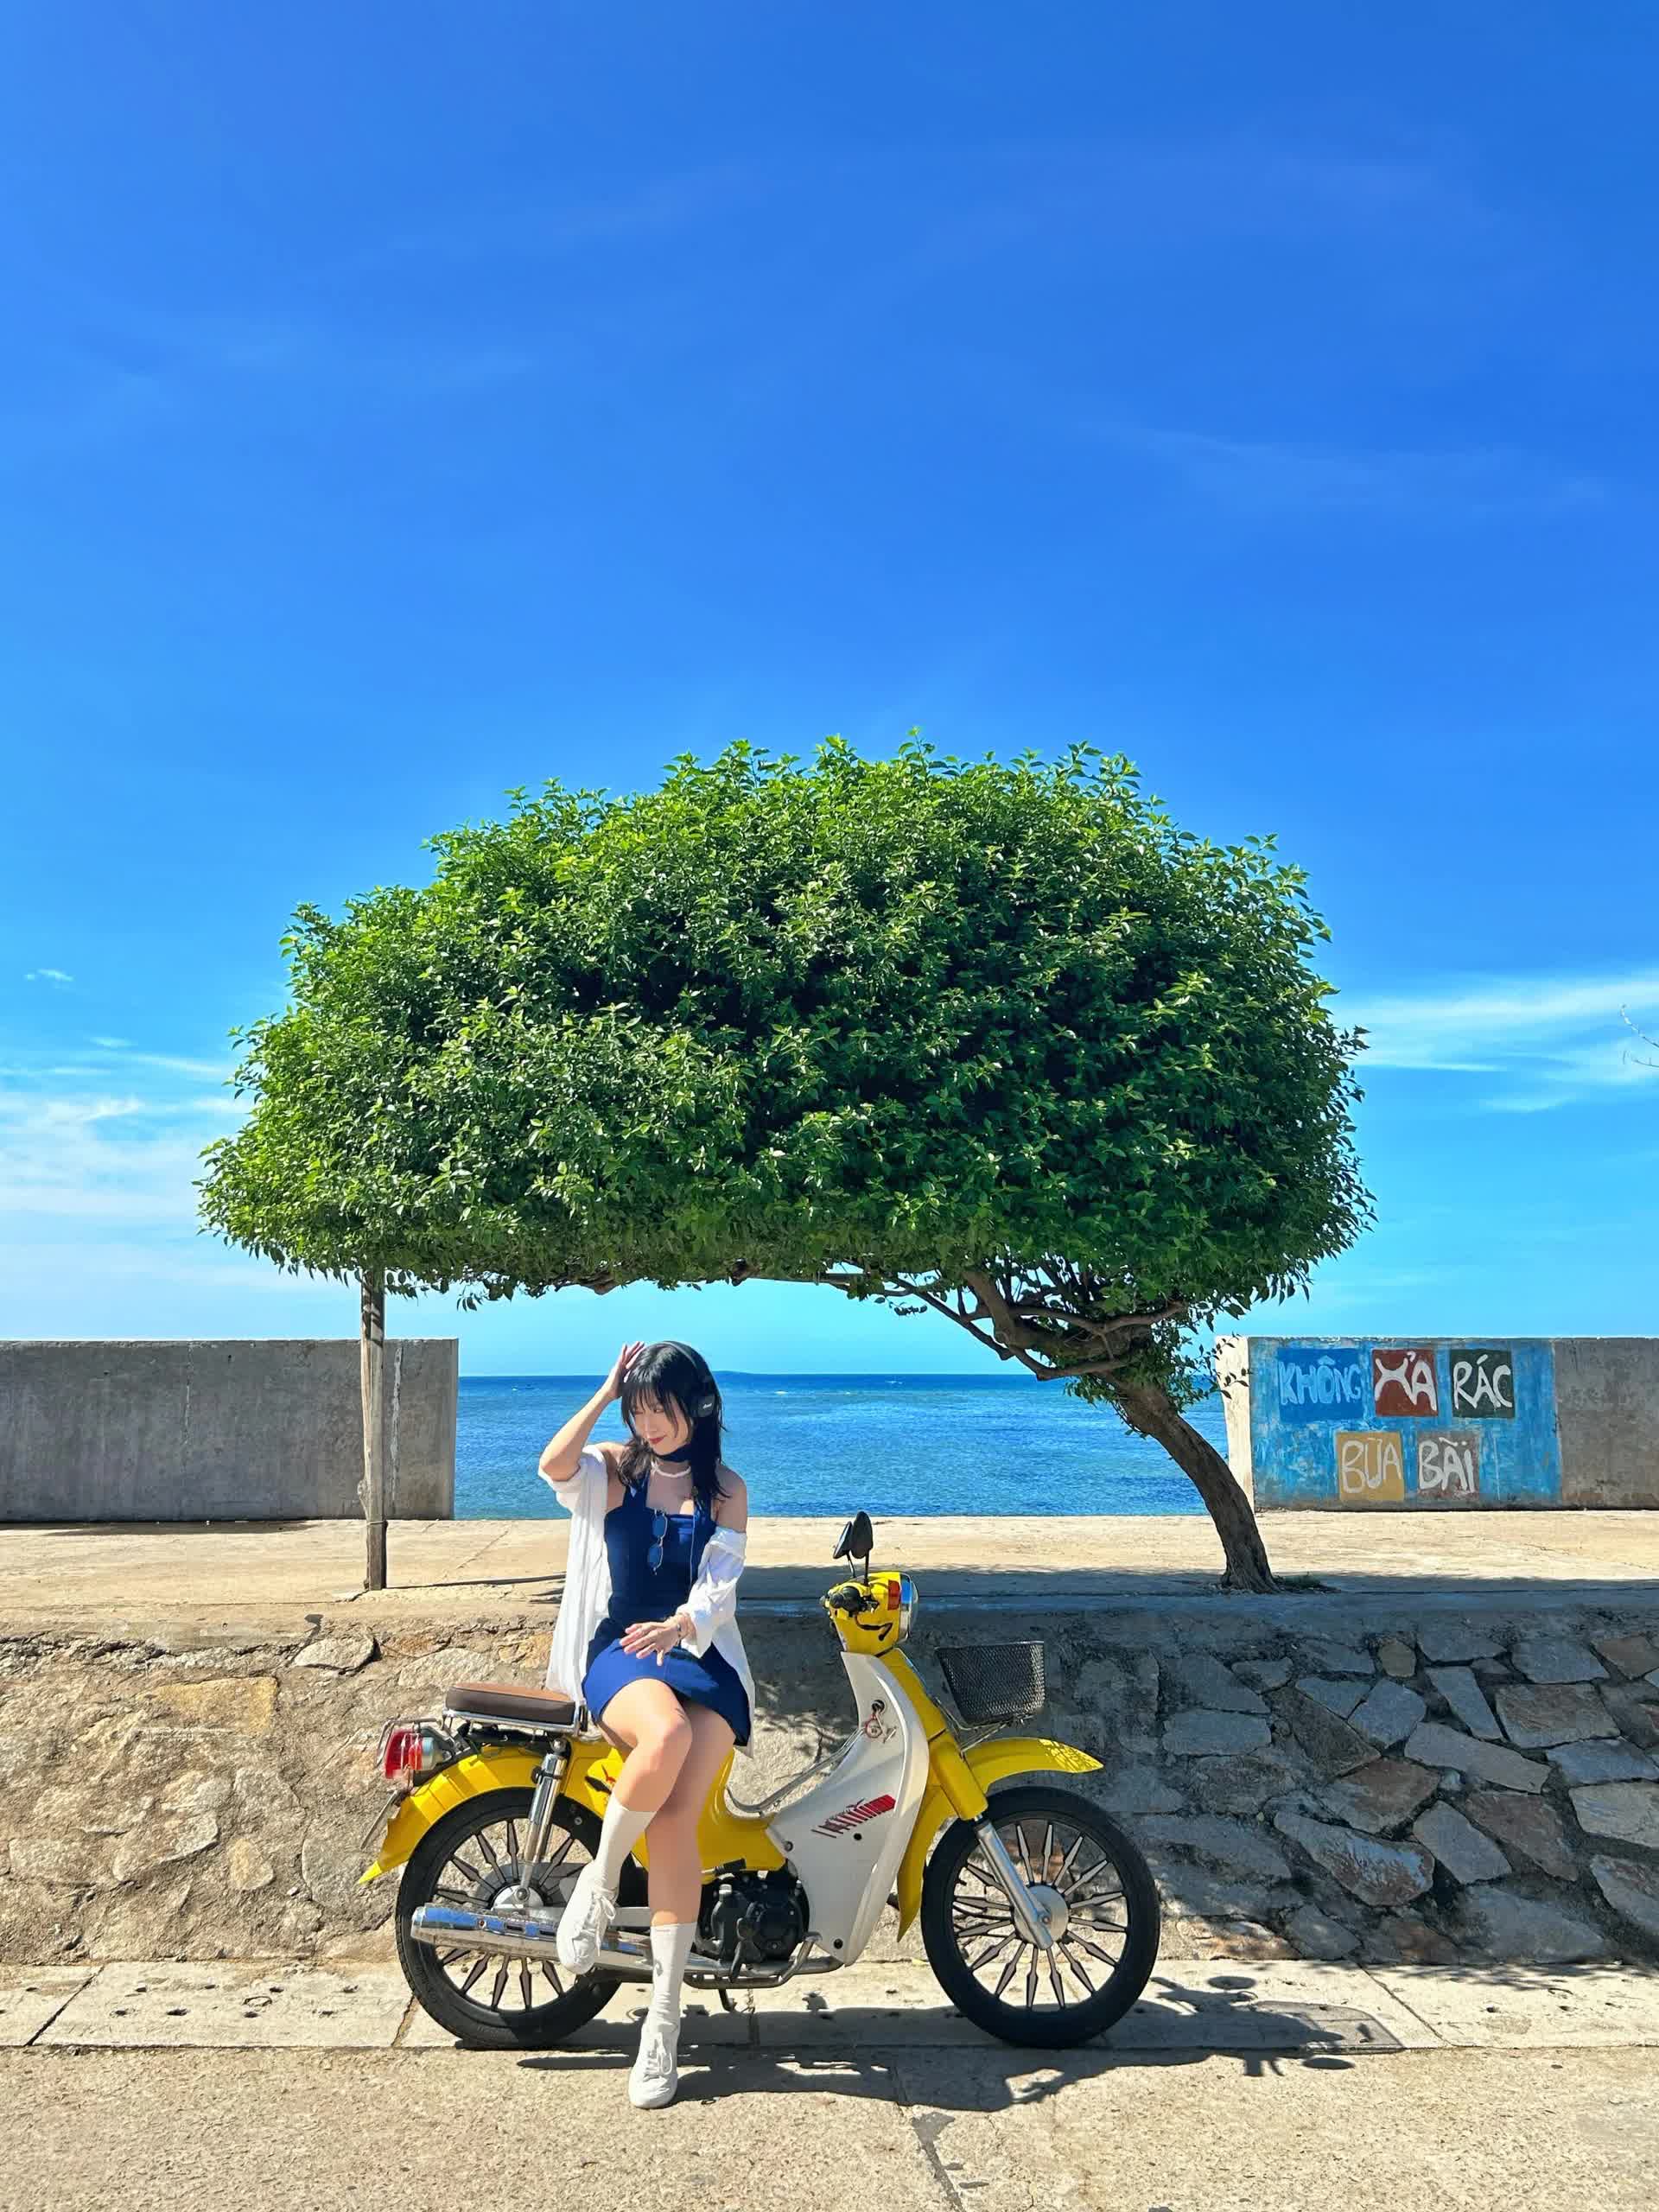 Đảo Phú Quý bắt đầu vào mùa biển xanh nắng vàng, chỉ cần đứng vào là có ảnh đẹp- Ảnh 12.